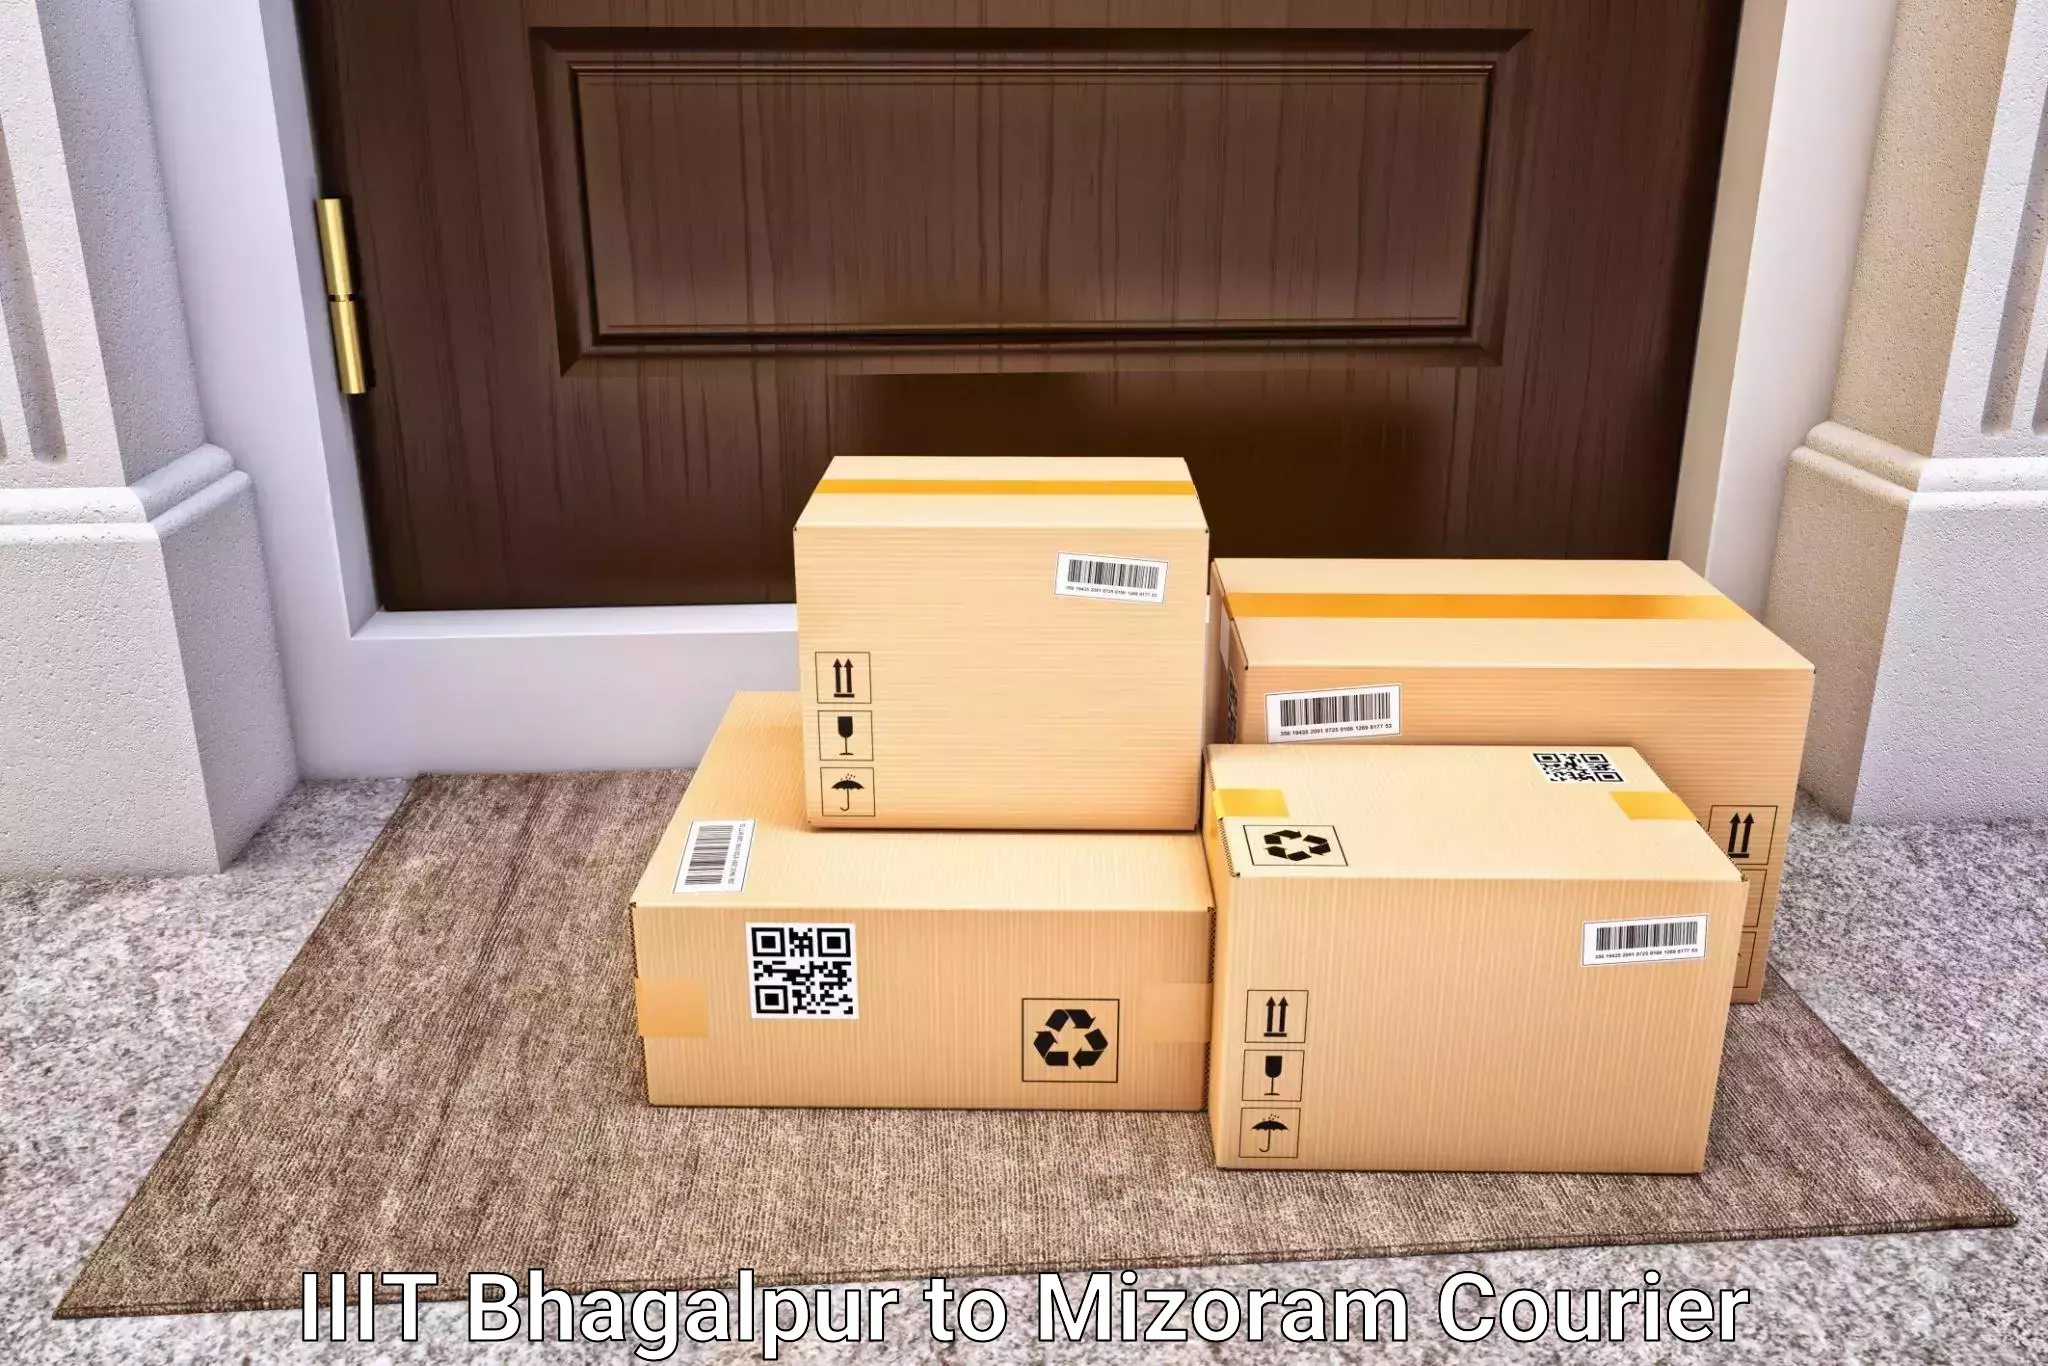 Luggage dispatch service IIIT Bhagalpur to Mizoram